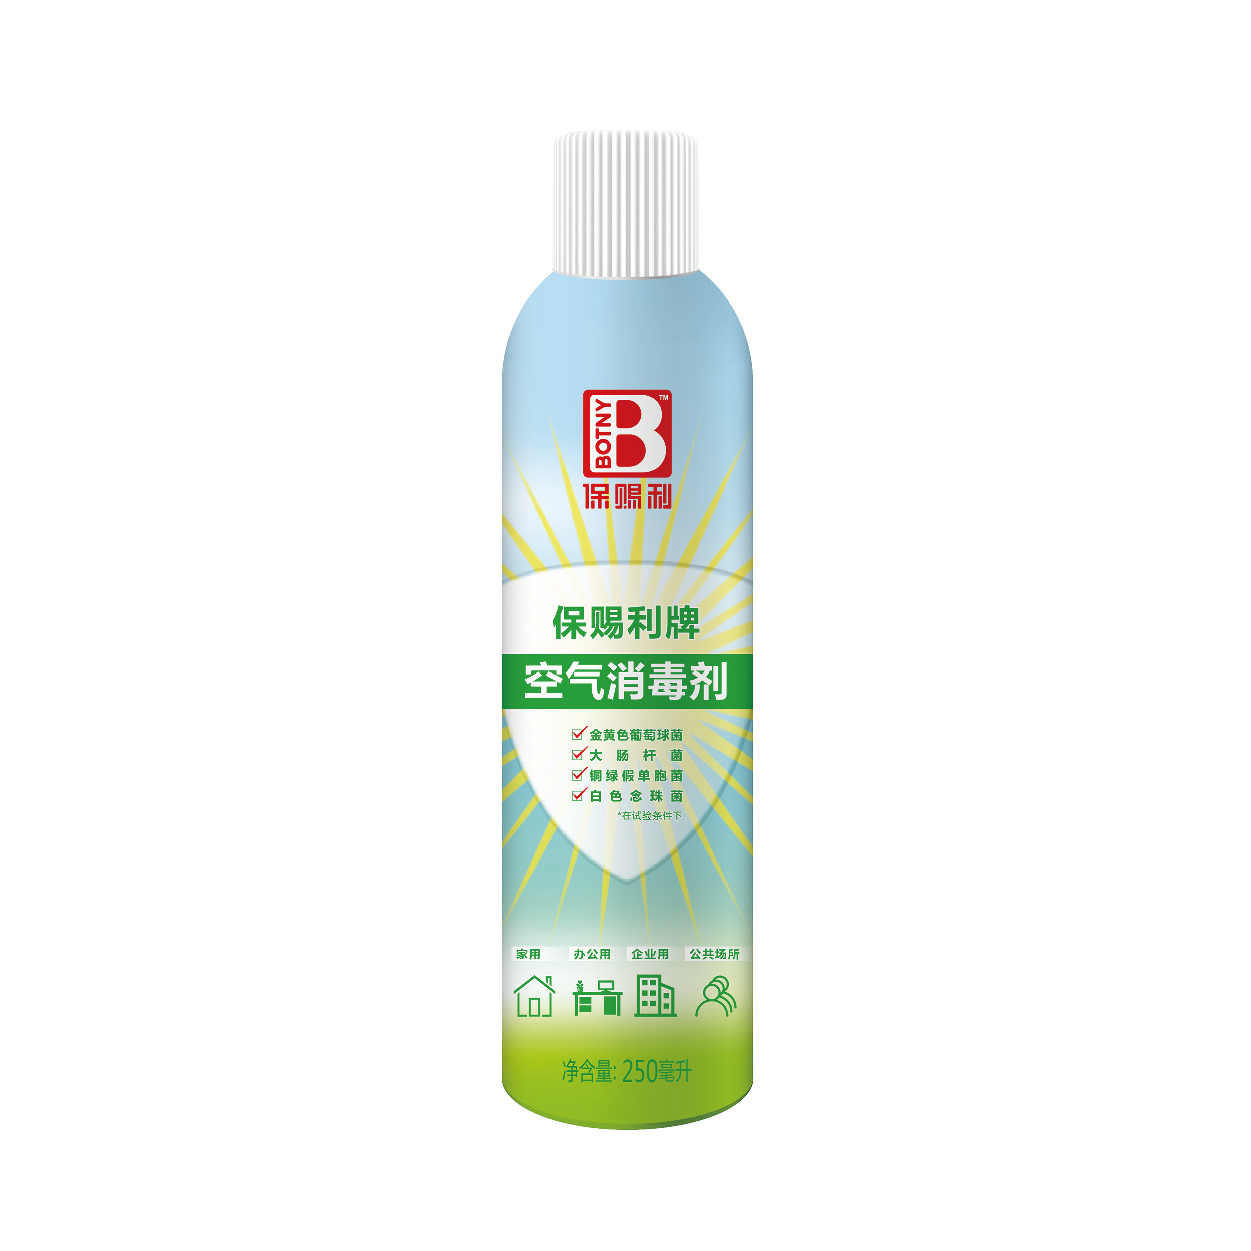 广州欧亚气雾剂与日化用品制造有限公司